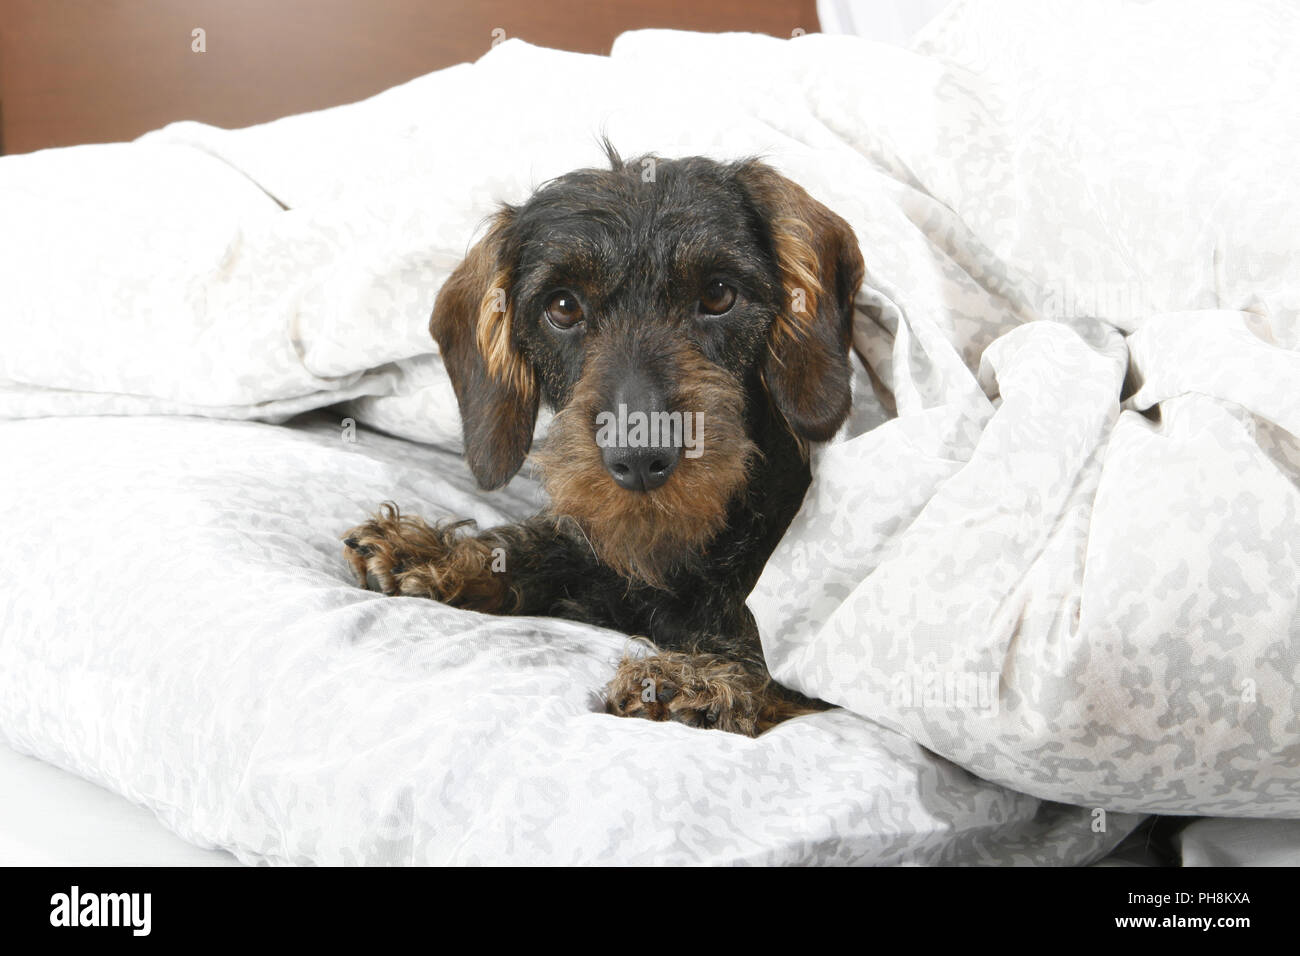 Rauhaardackel, Bett, Wire-haired dachshund, bed Stock Photo - Alamy